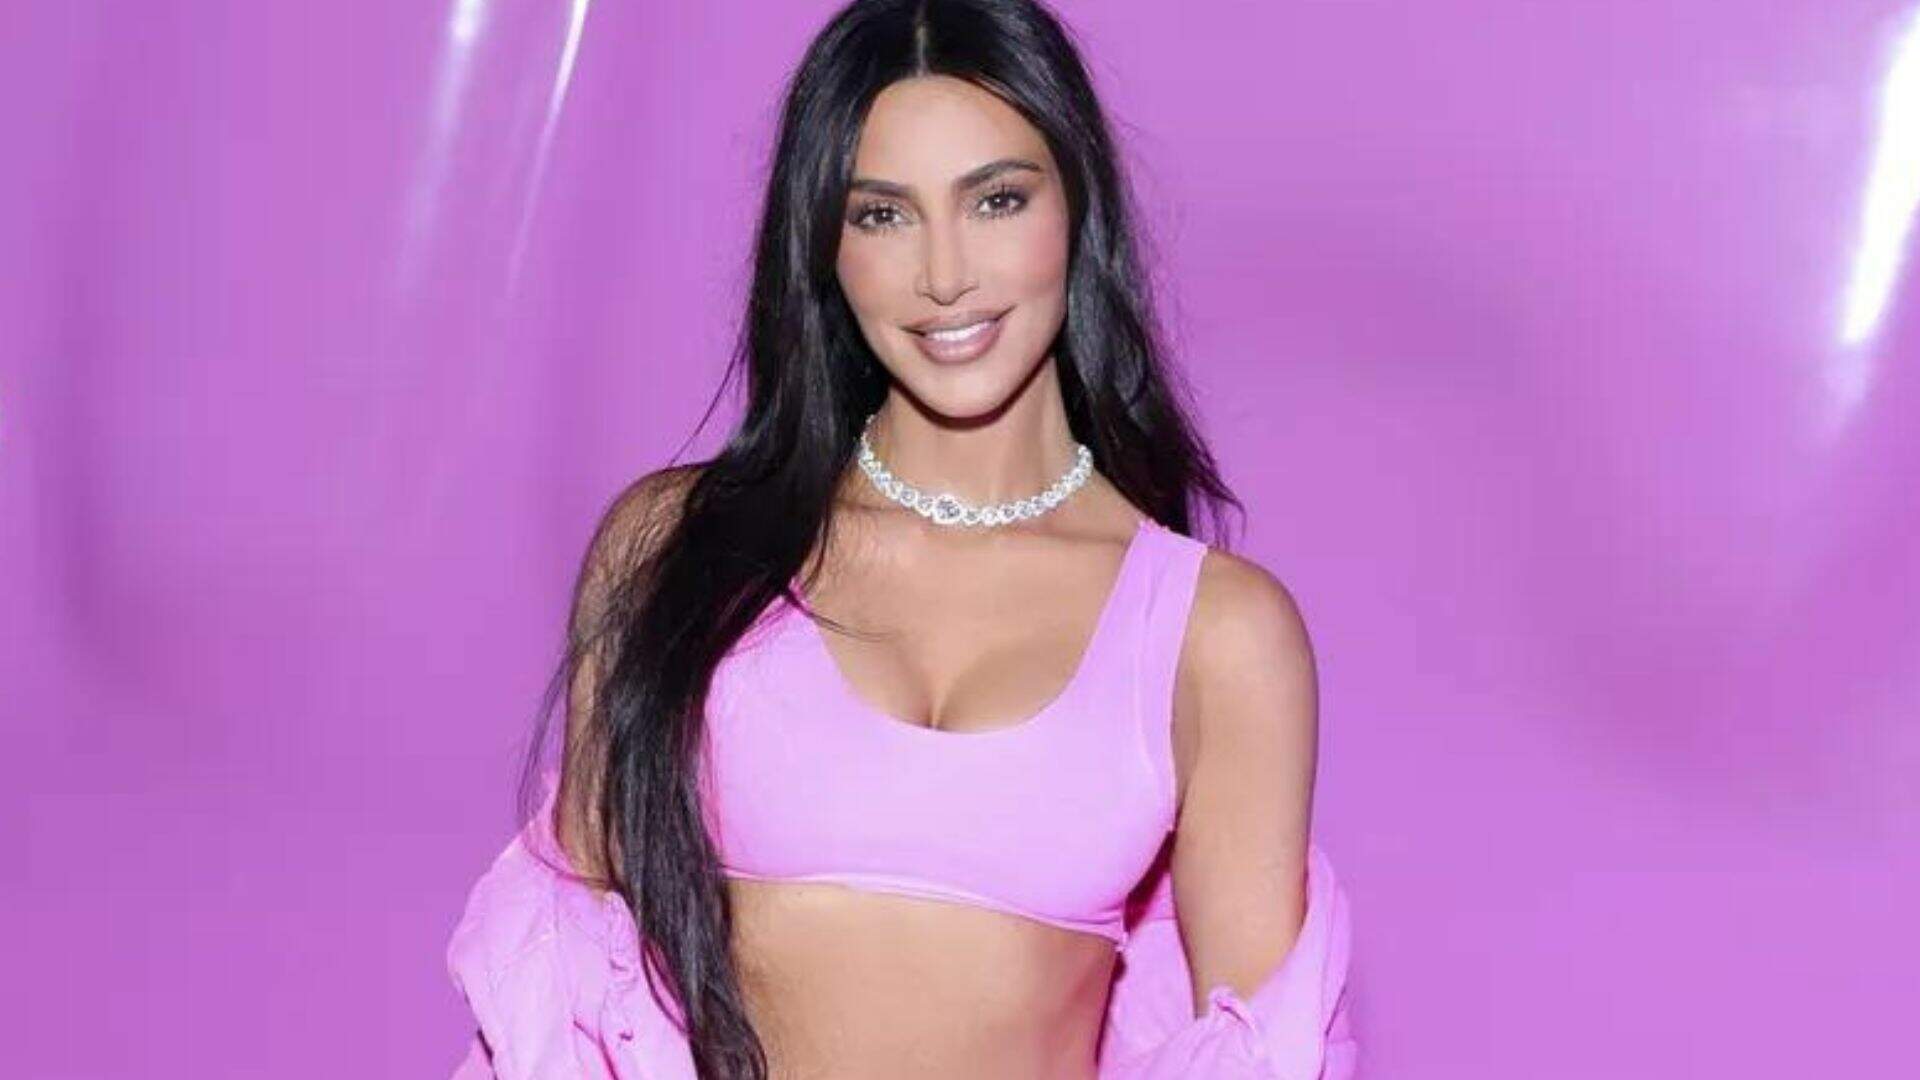 100% Barbiecore: Kim Kardashian aposta em look todo pink para evento de sua marca